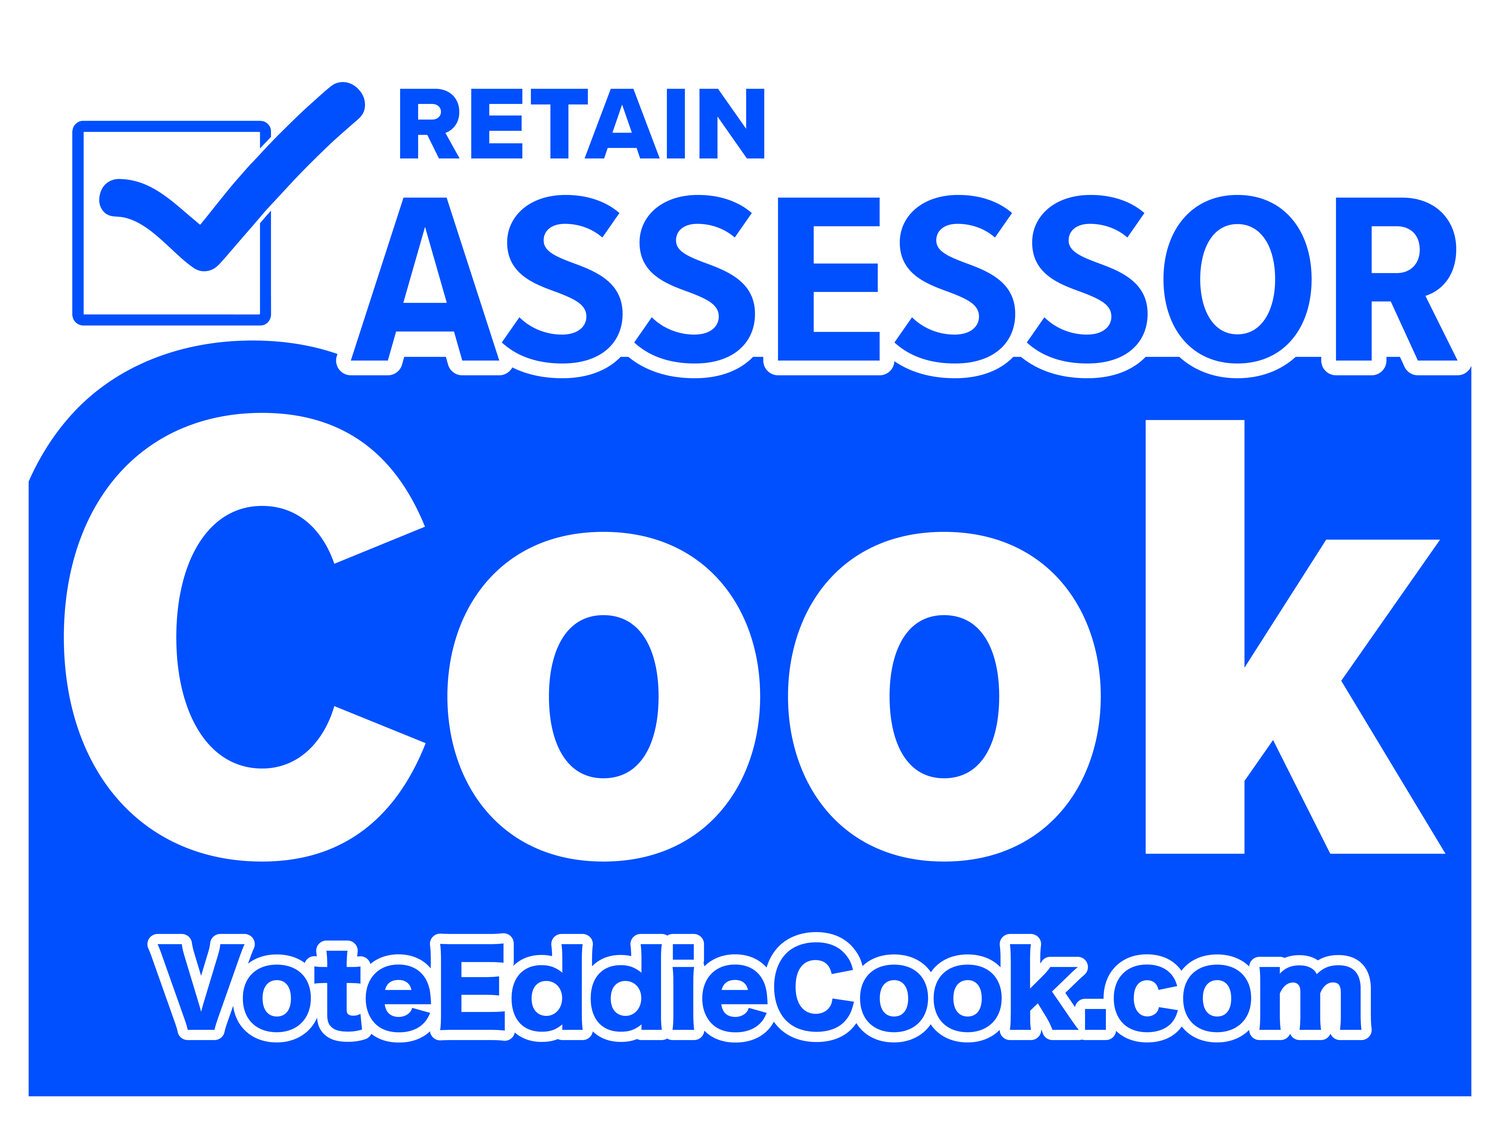 Vote Eddie Cook